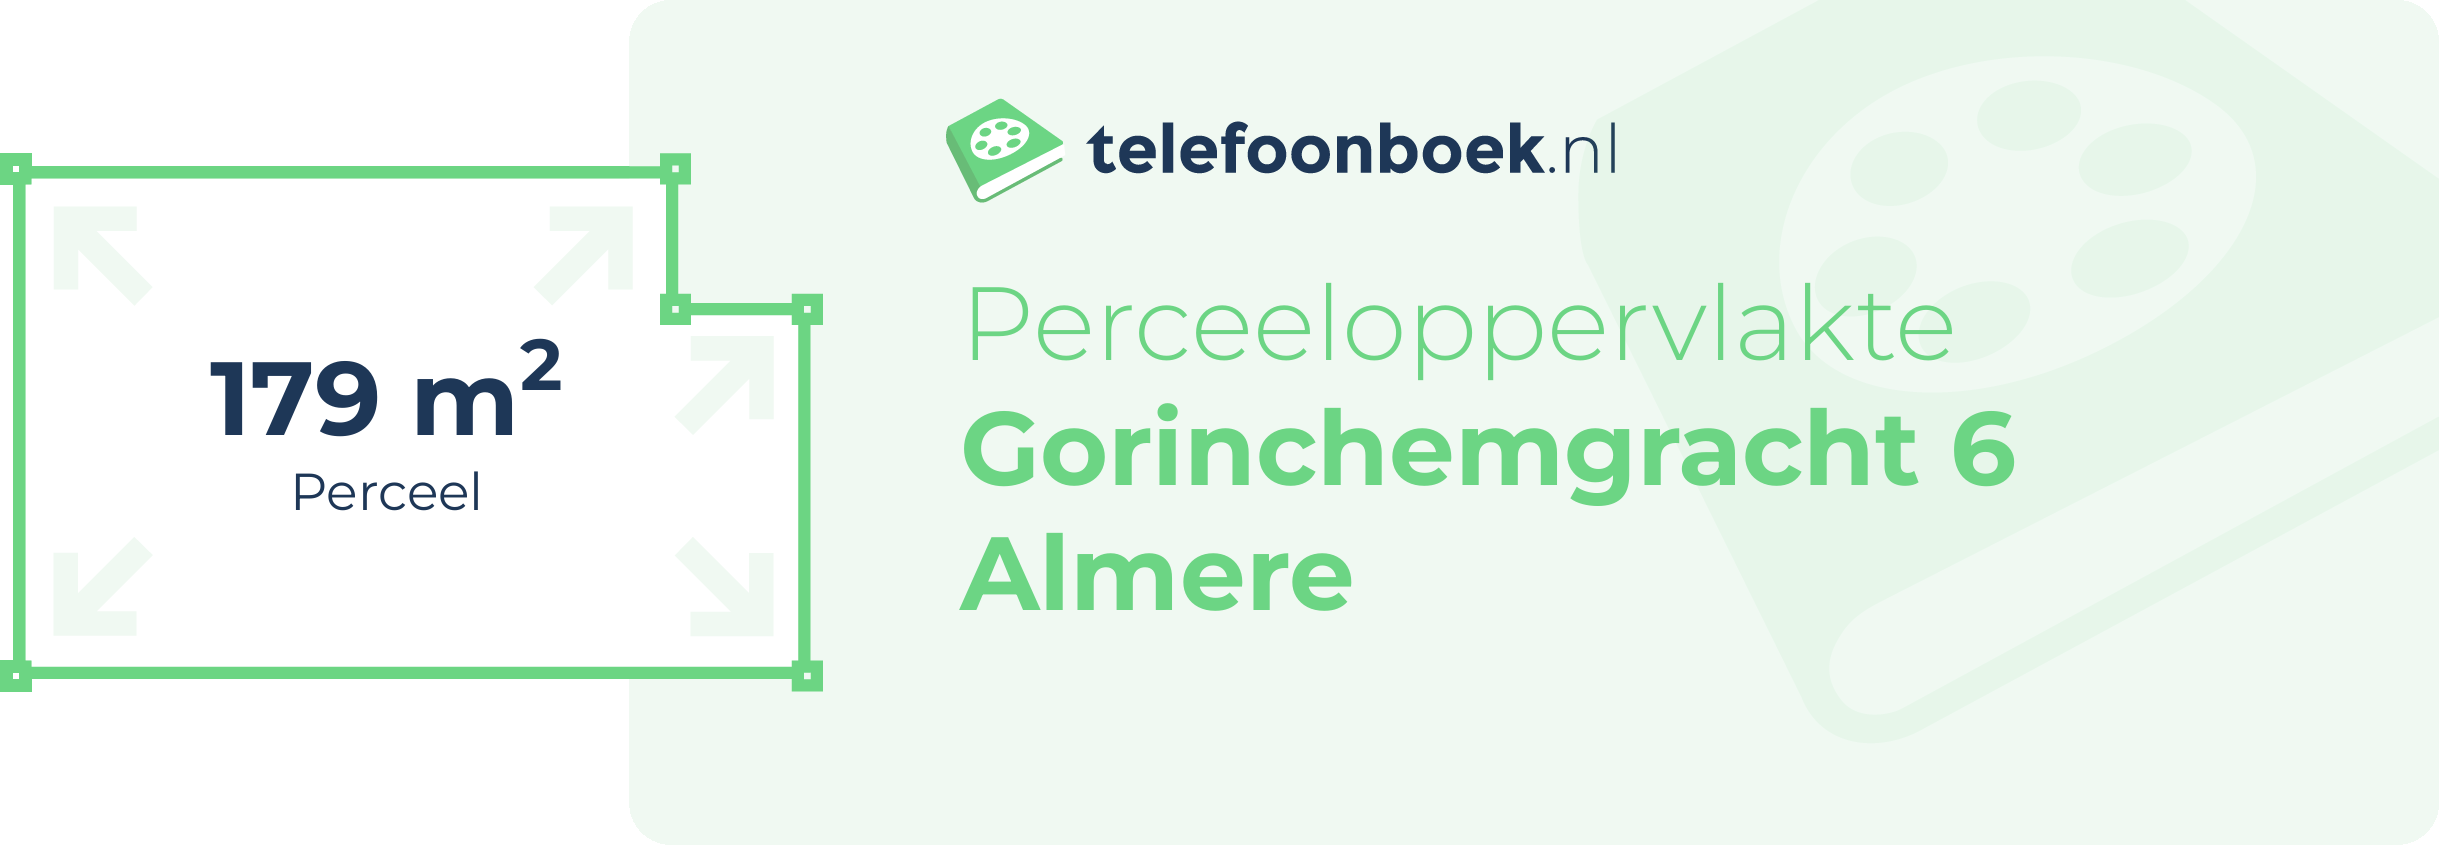 Perceeloppervlakte Gorinchemgracht 6 Almere